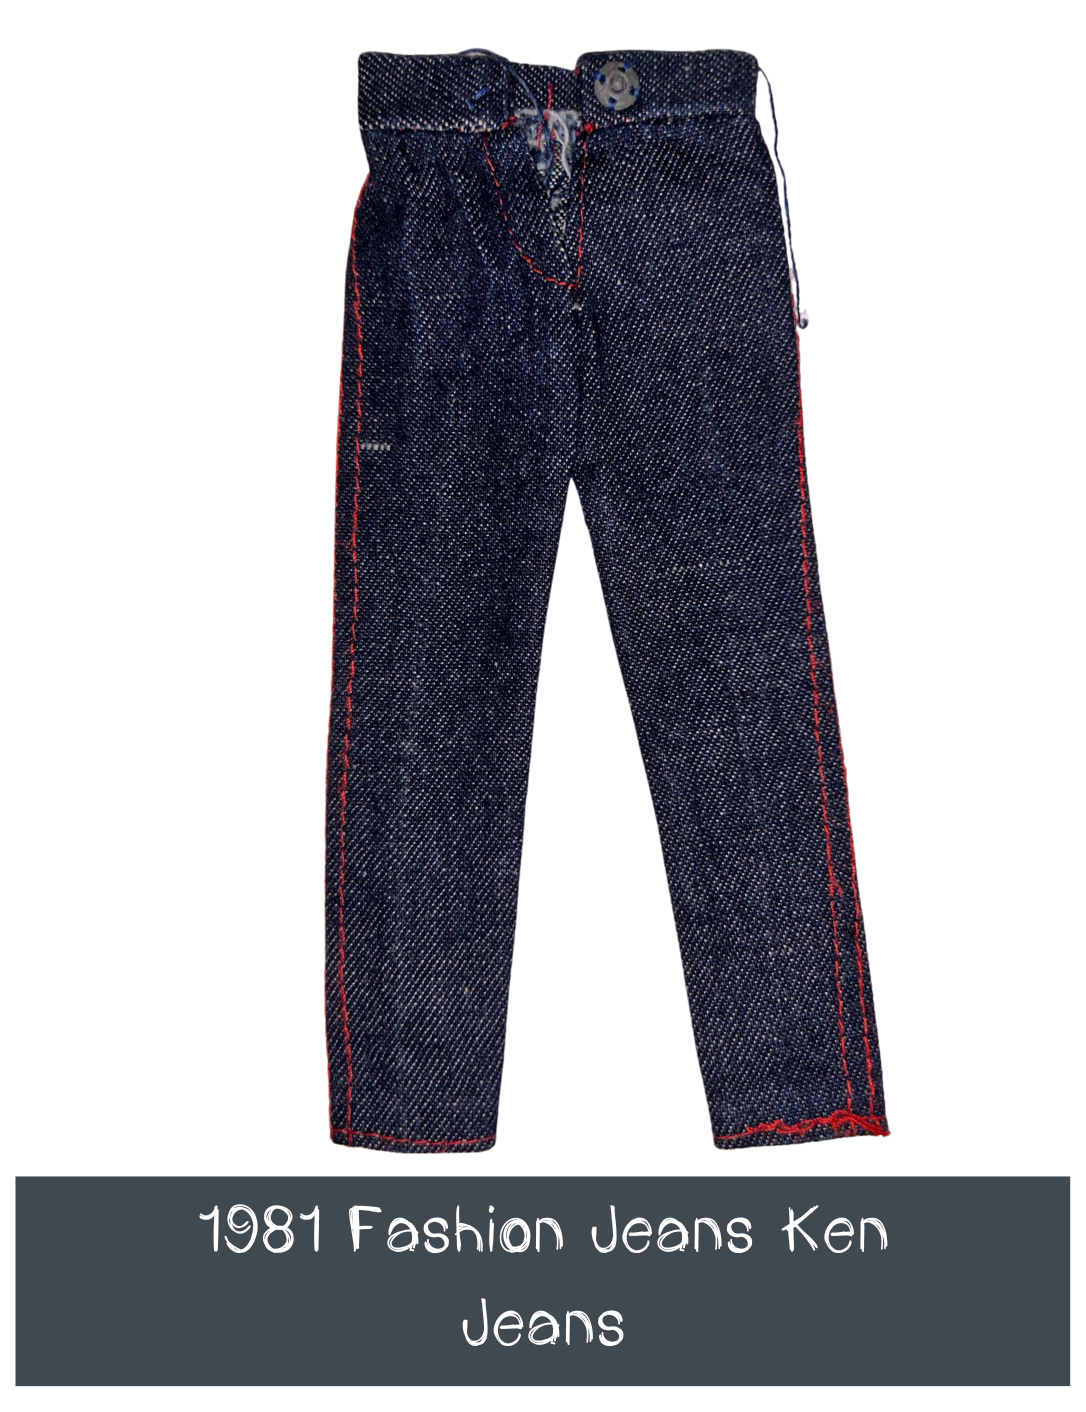 1981 Fashion Jeans Ken Jeans